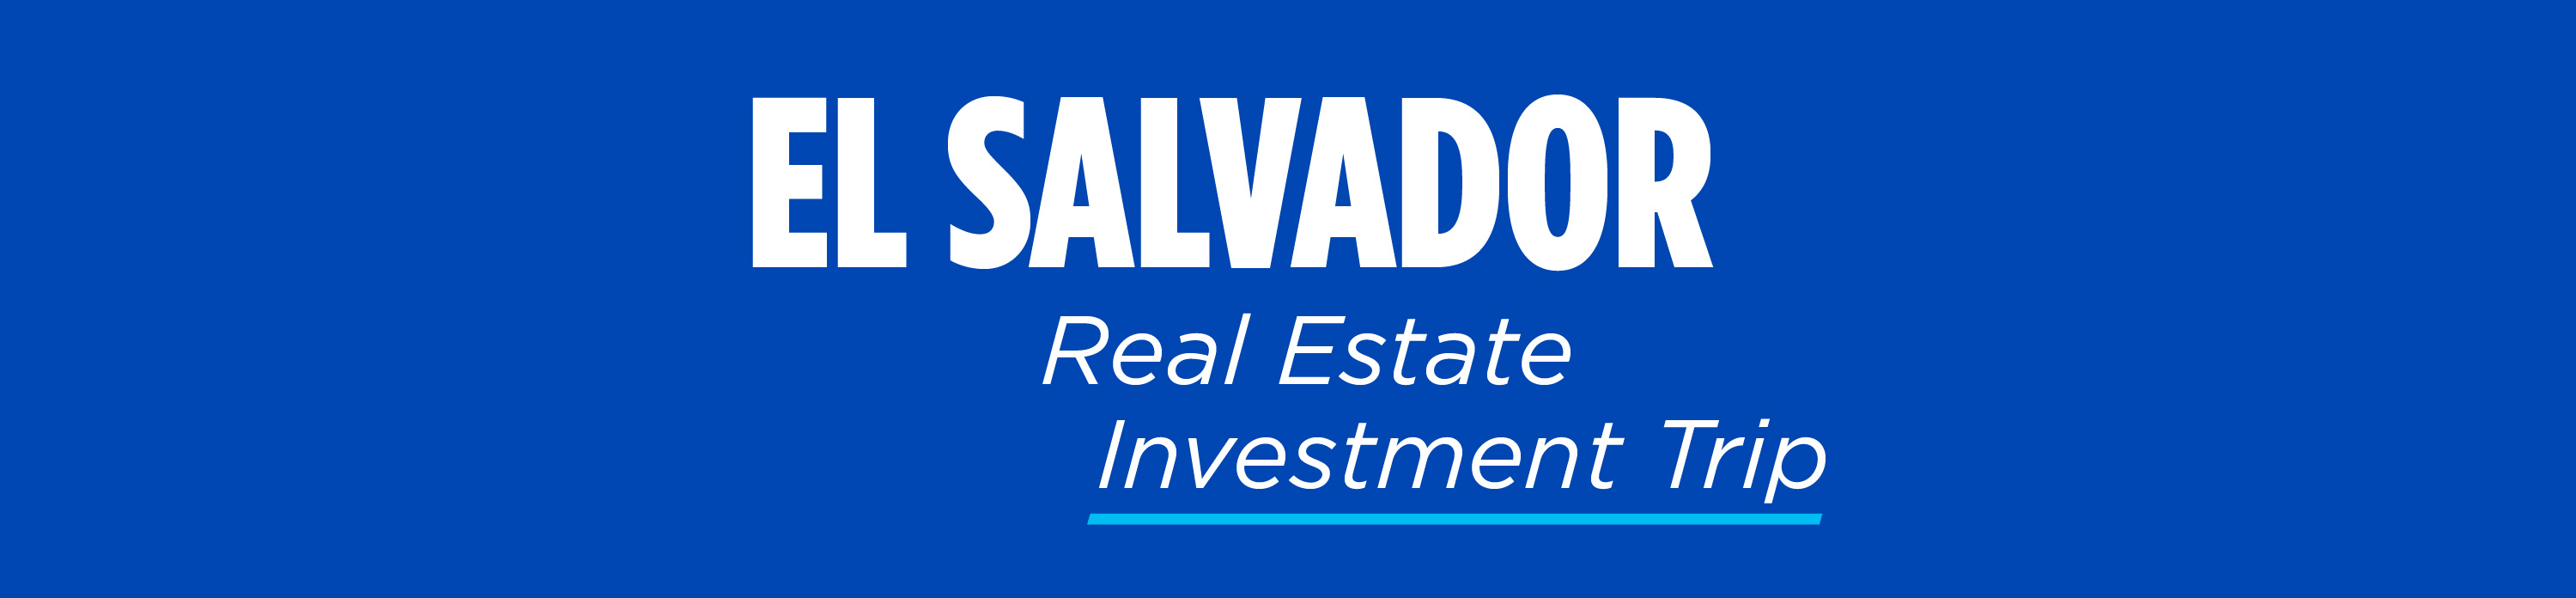 El-Salvador-Real-Estate-Investment-Trip-foot-logo